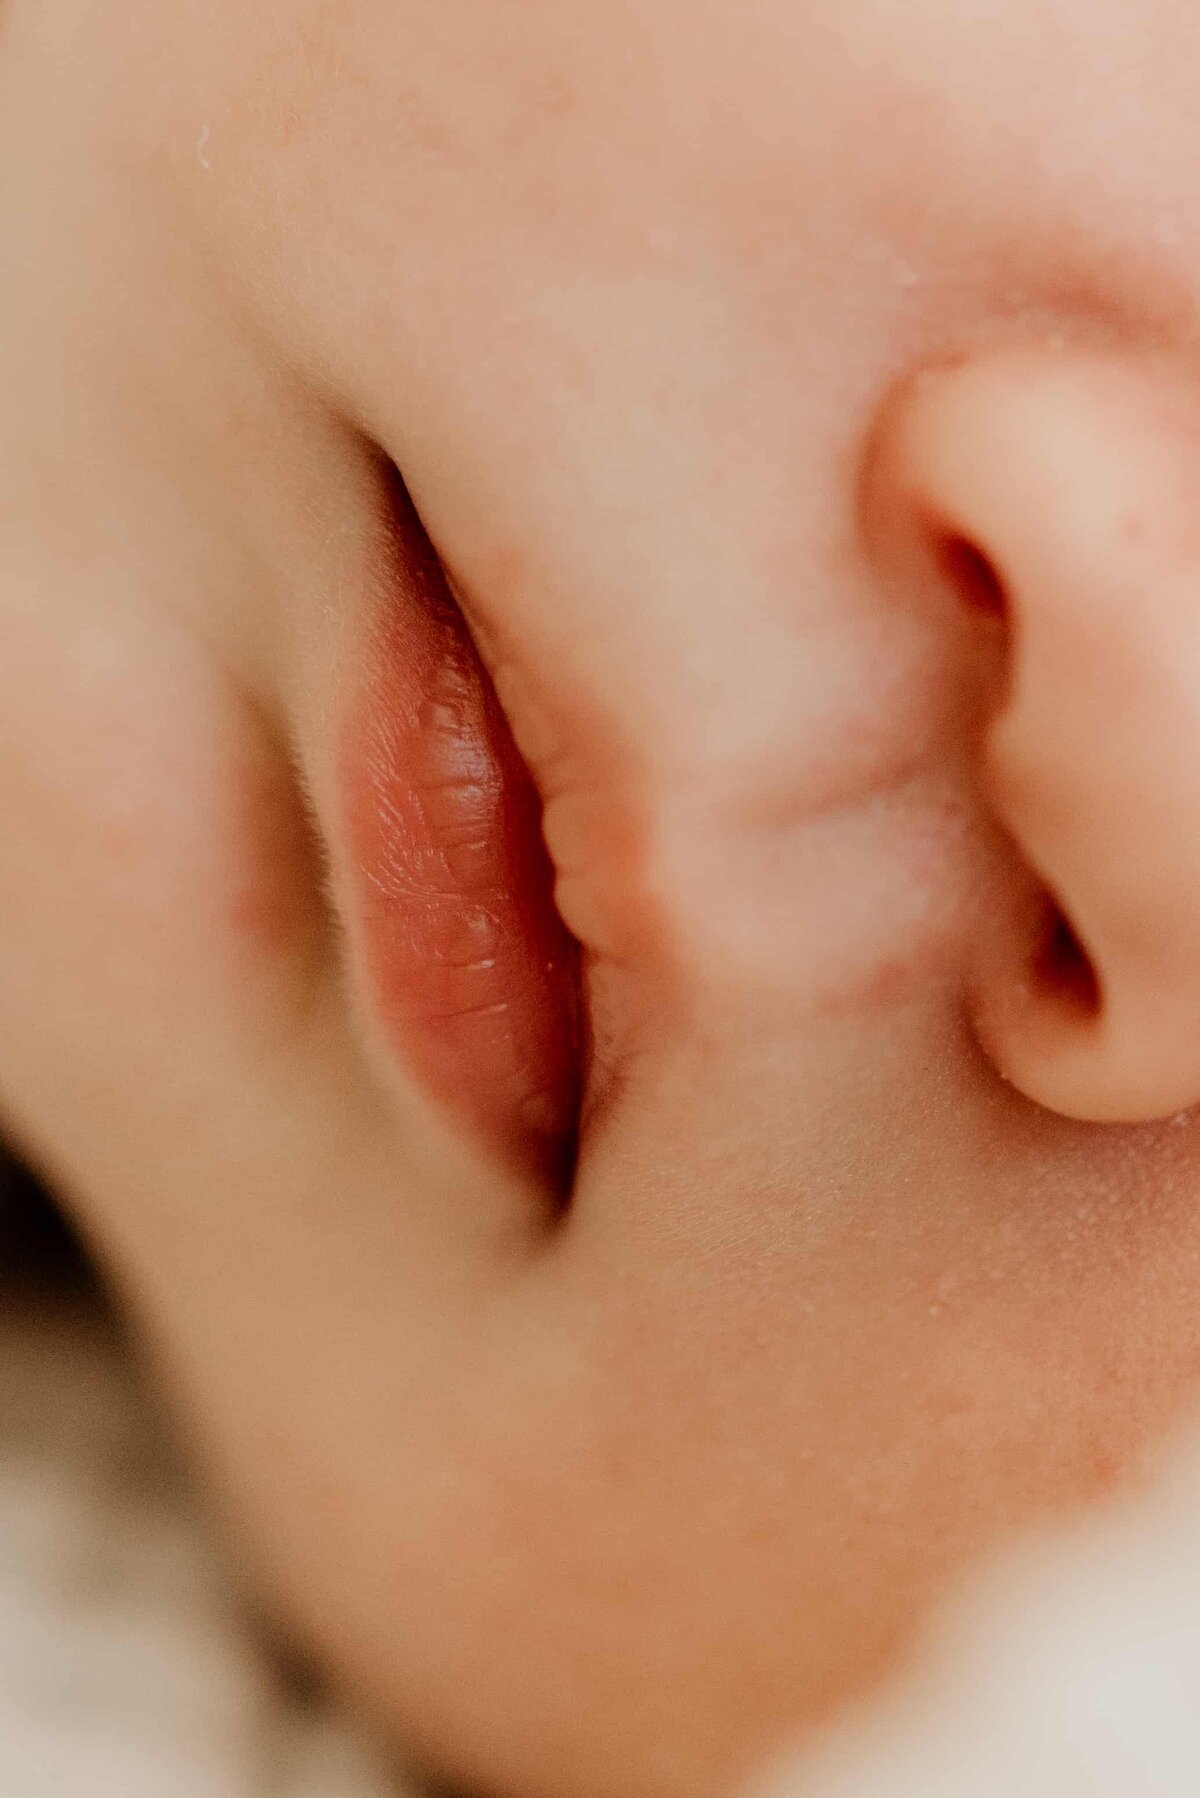 Detaljer av munn og nese til en nyfødt baby.